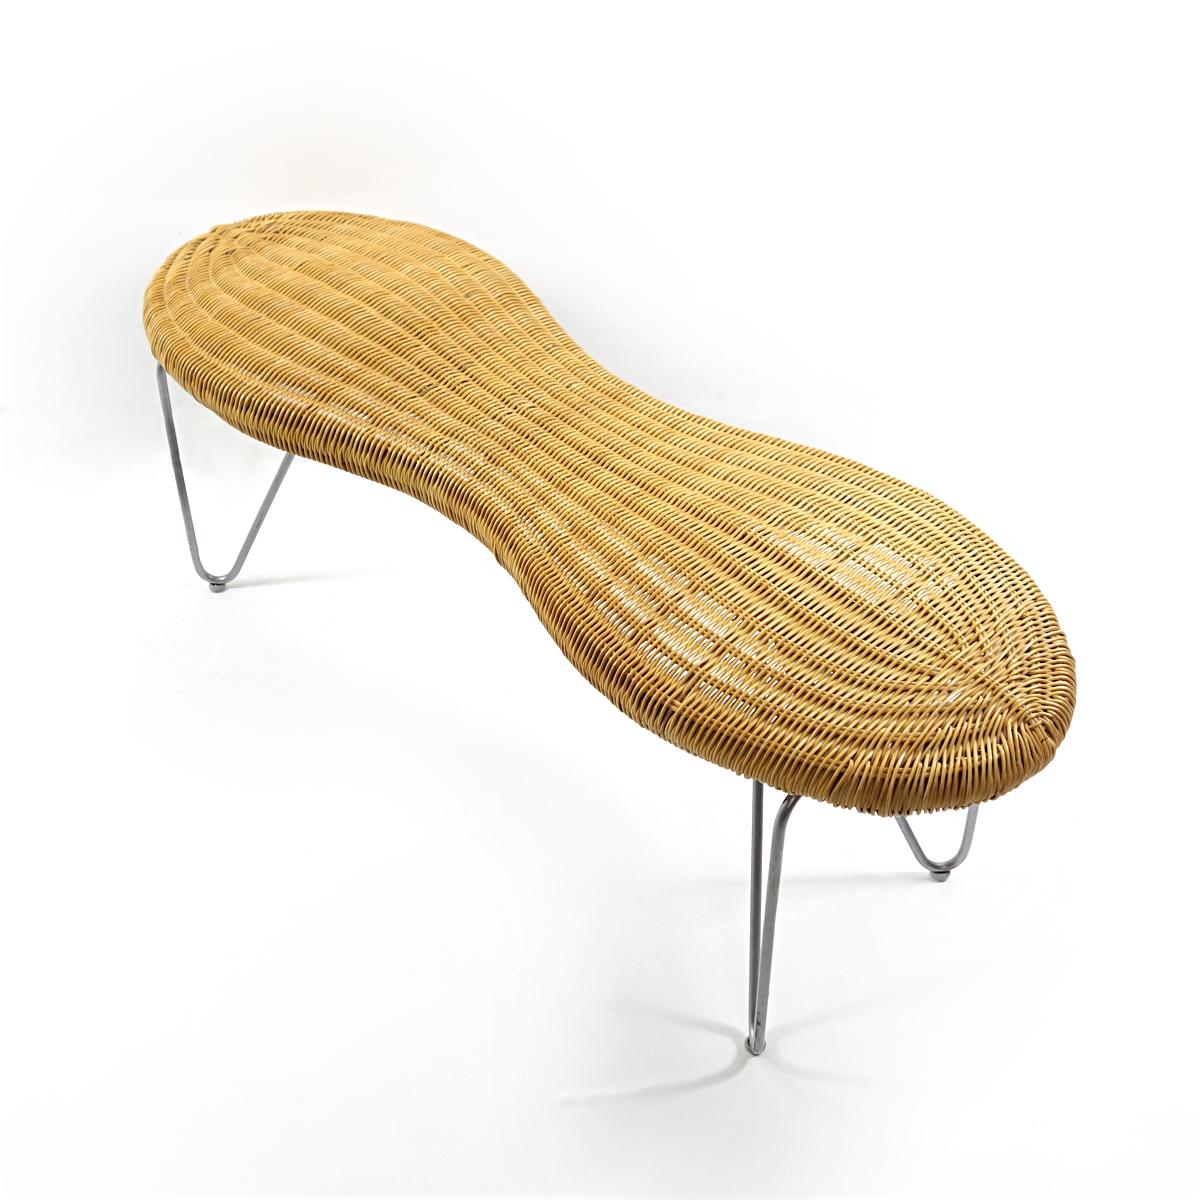 Rattanbank in Form einer sich schälenden Erdnuss, eine limitierte Auflage von Ikea aus den 1990er Jahren. Die 3D-Formen des Rattansitzes wurden professionell gefertigt. Die Form ist elegant durch die charakteristische Taille der Erdnuss. Darüber